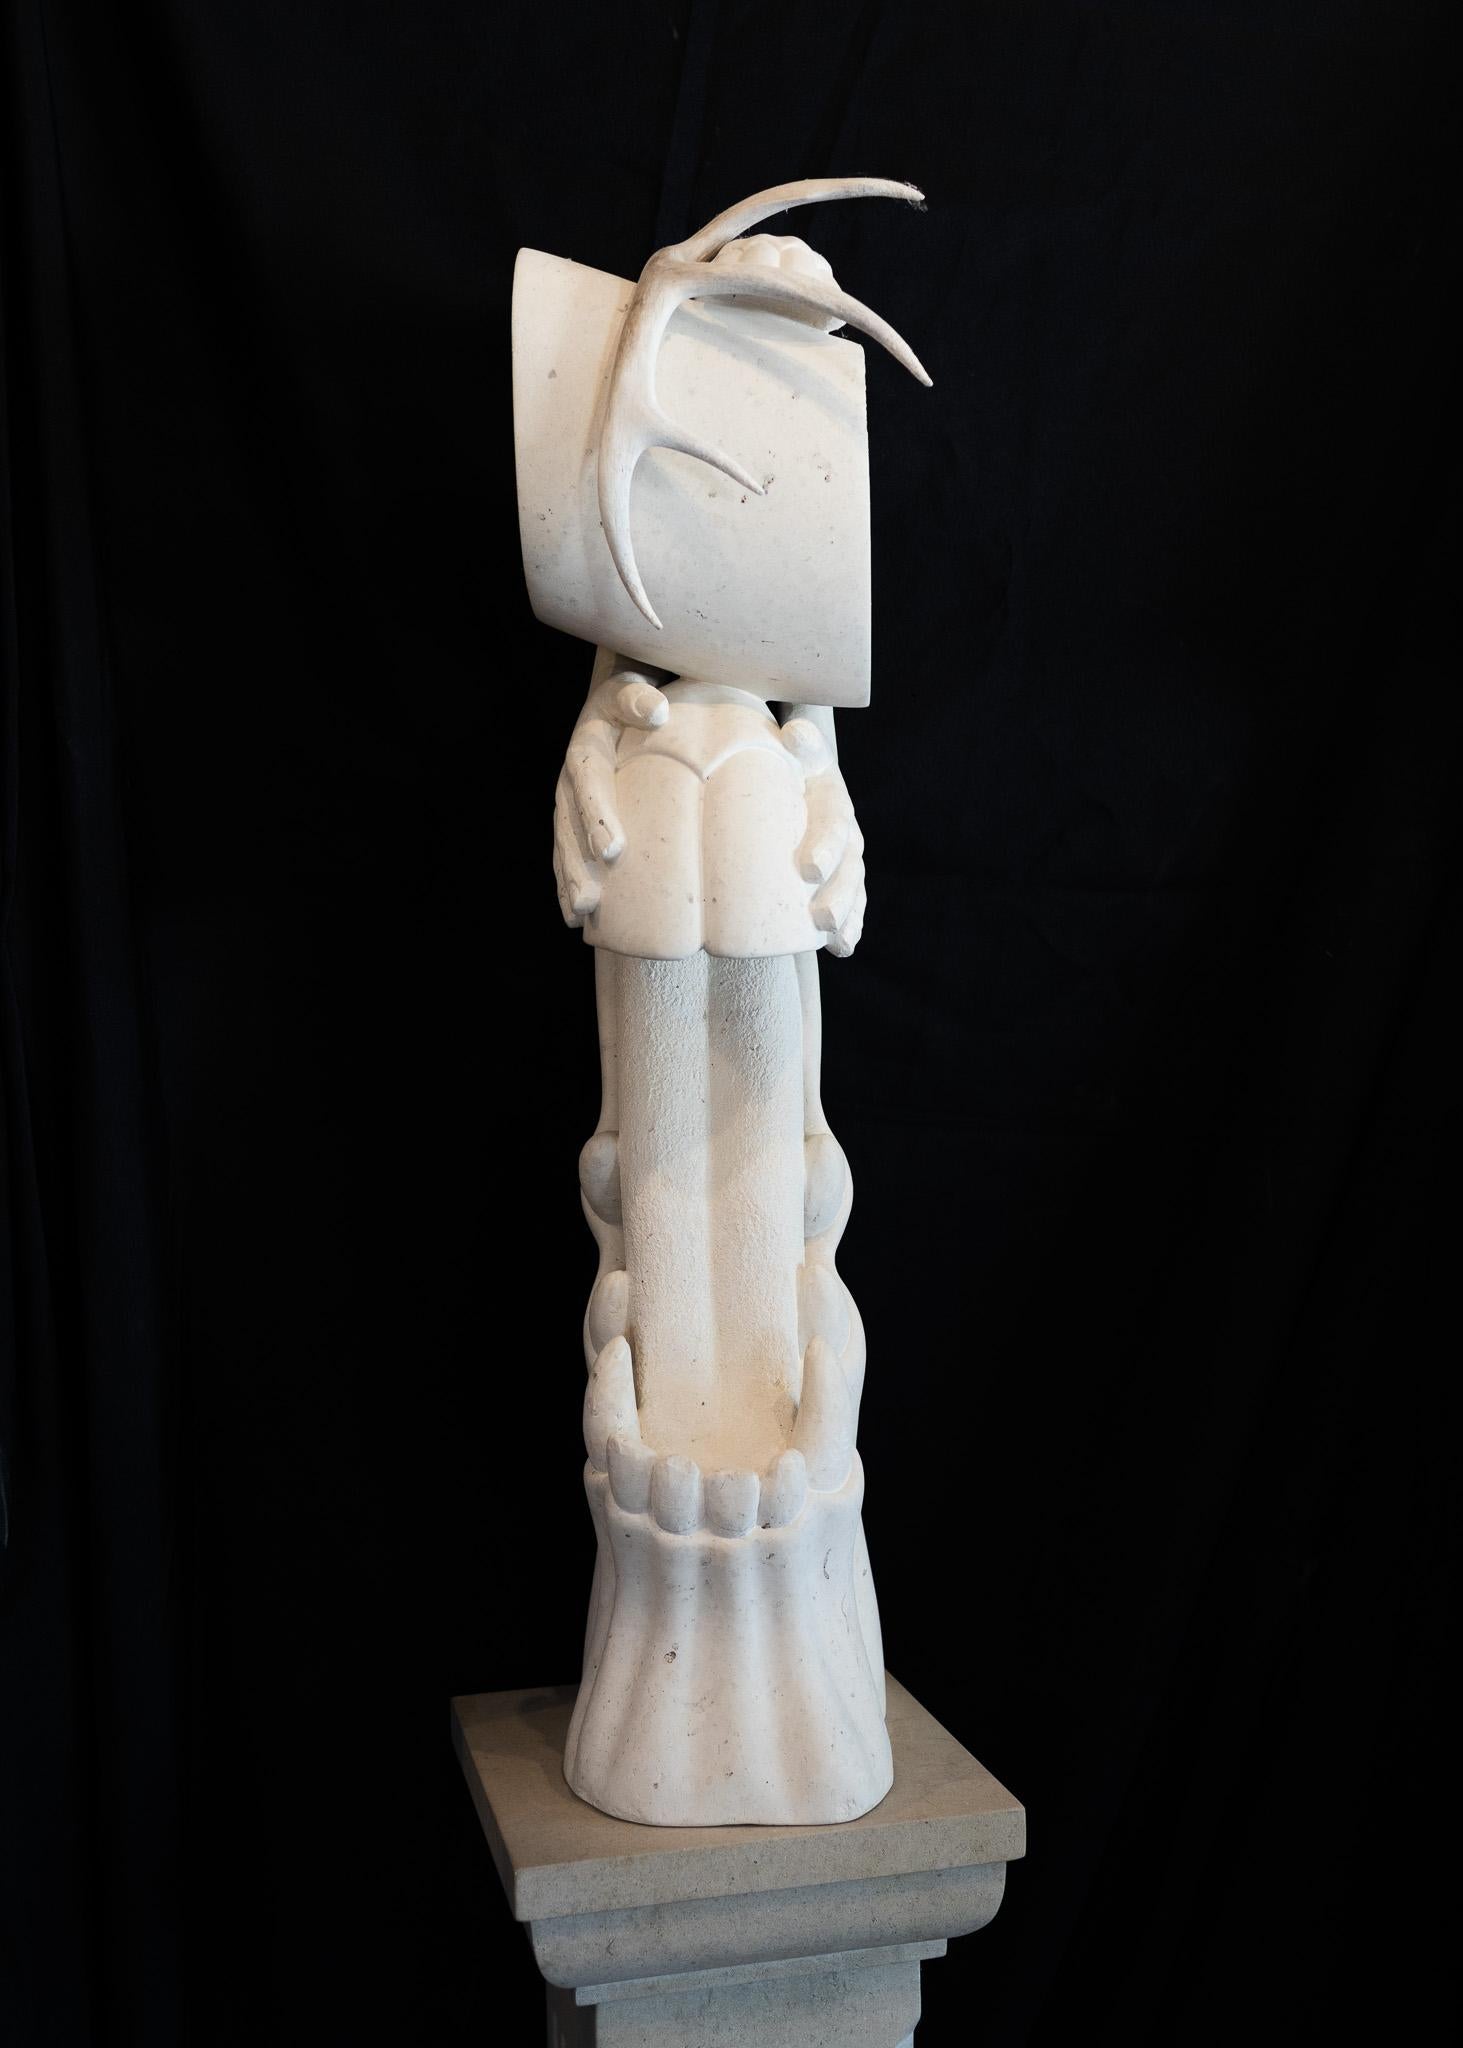 Fantastische Psychedelic-Skulptur „Boogie Woogie Got a Horse Bit“ Weißer Stein – Sculpture von Bob Ragan